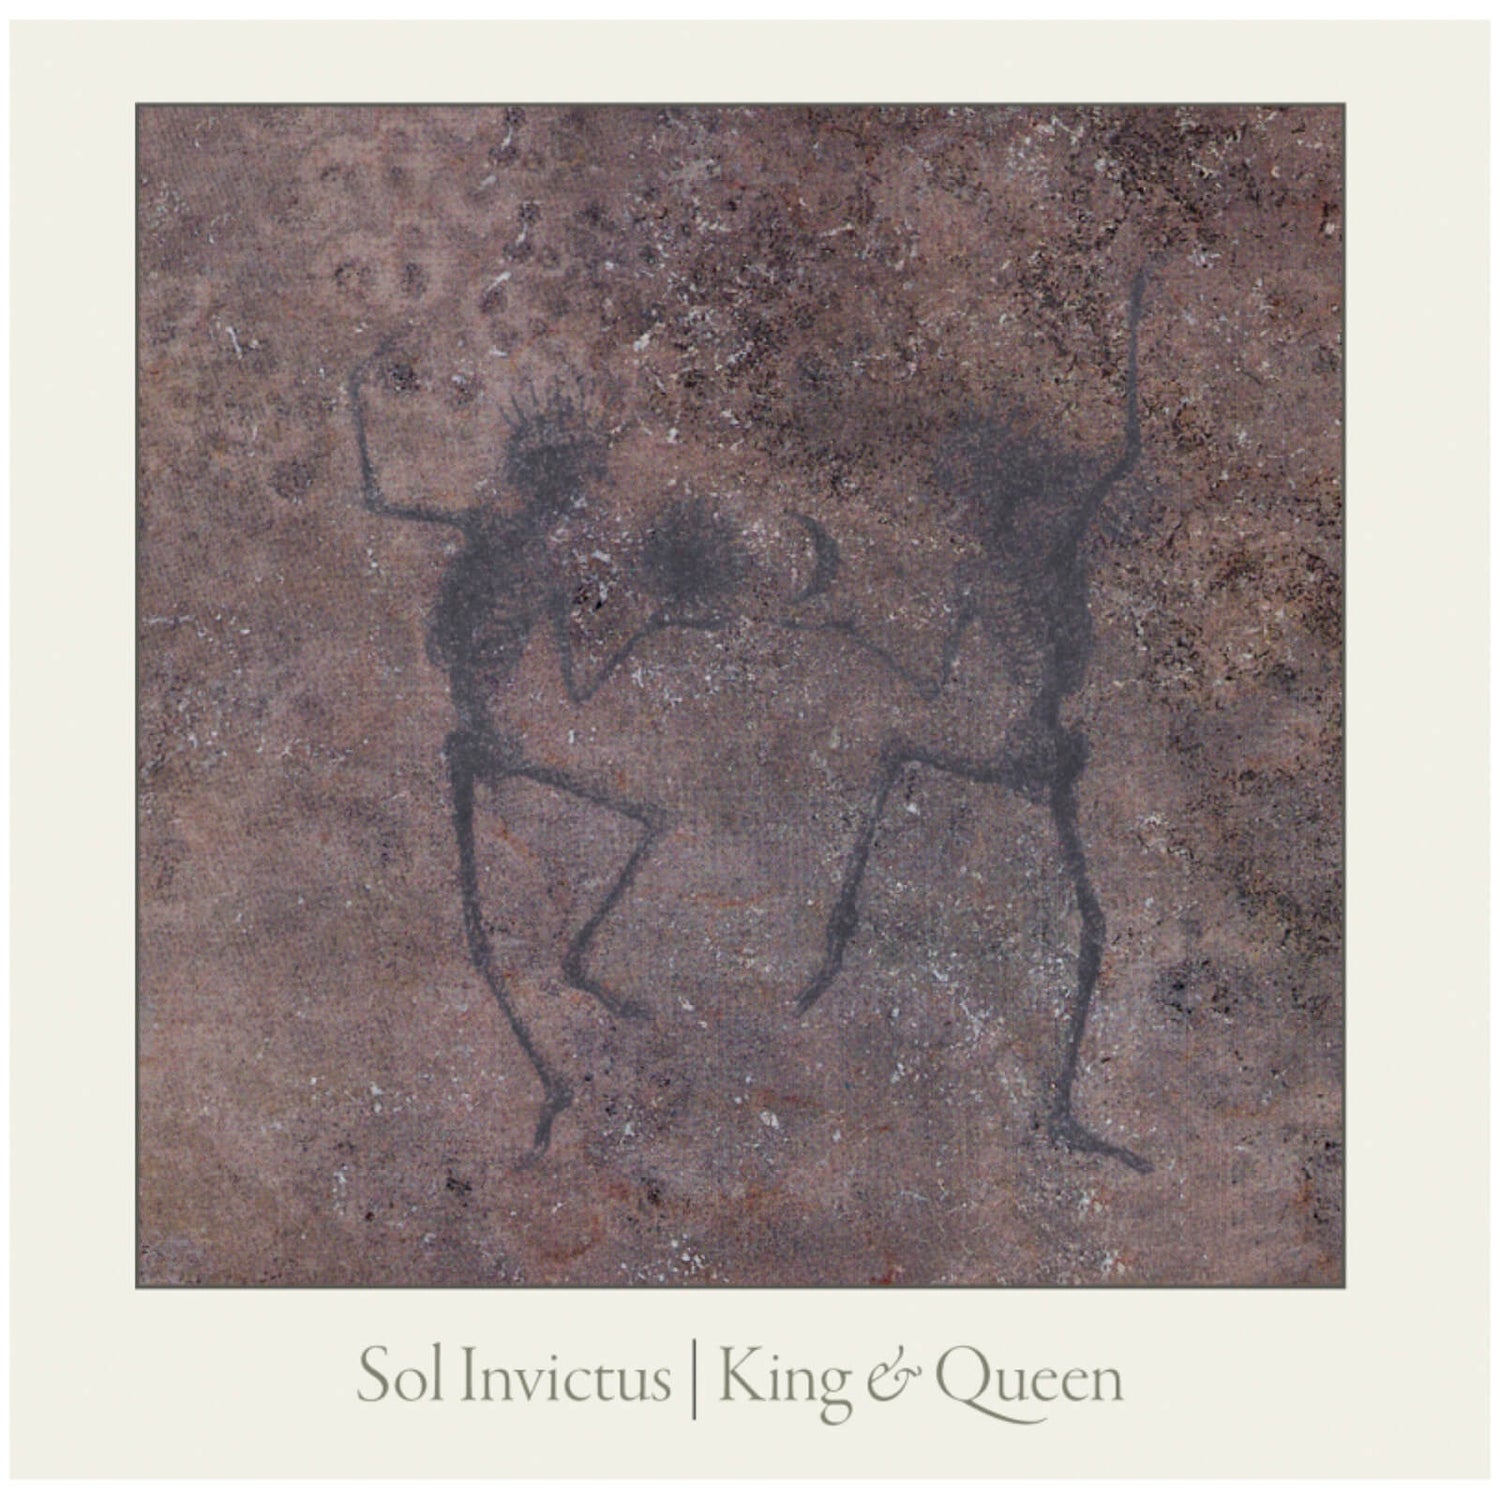 Sol Invictus - King & Queen 180g Vinyl